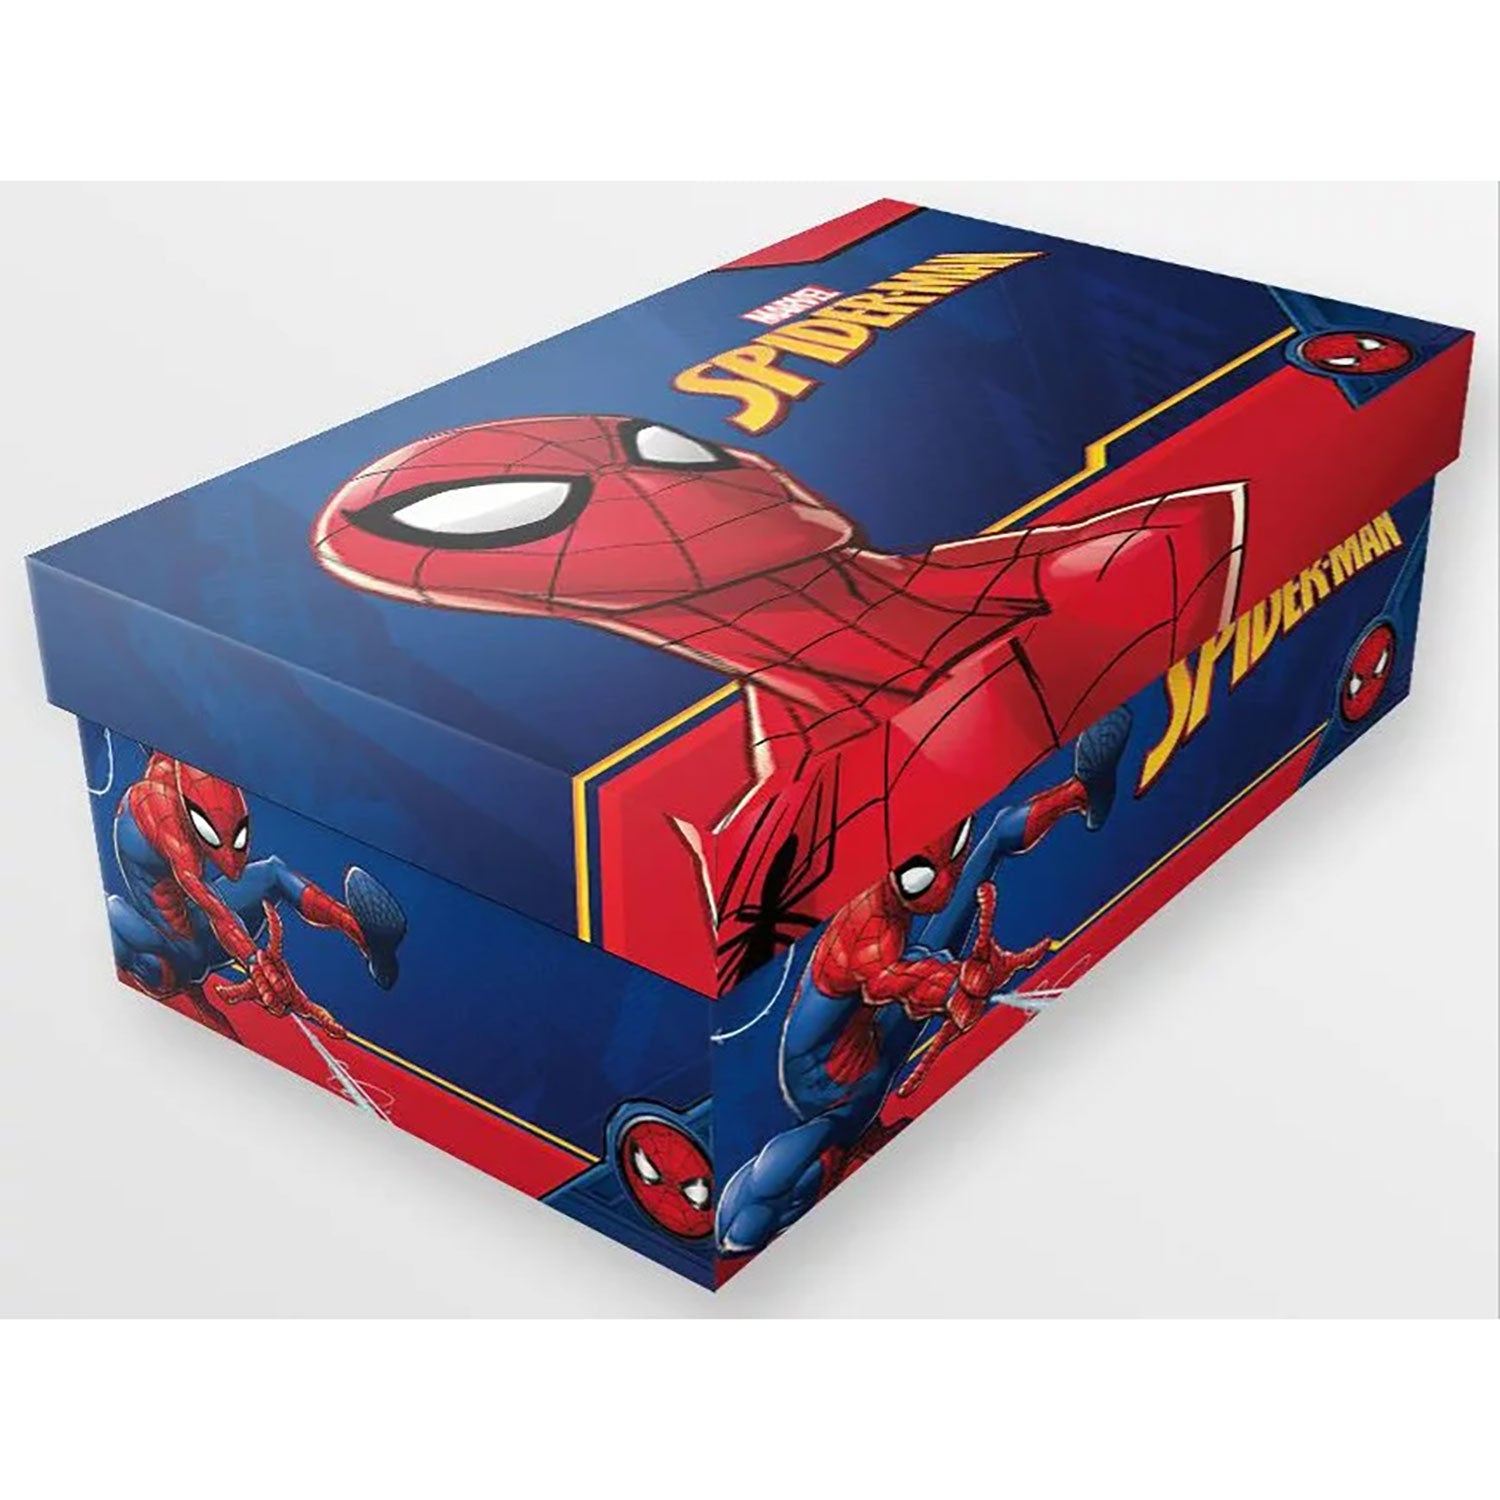 Scarpe Marvel Spiderman sneakers sportive a strappo Spider Man bambino 4987